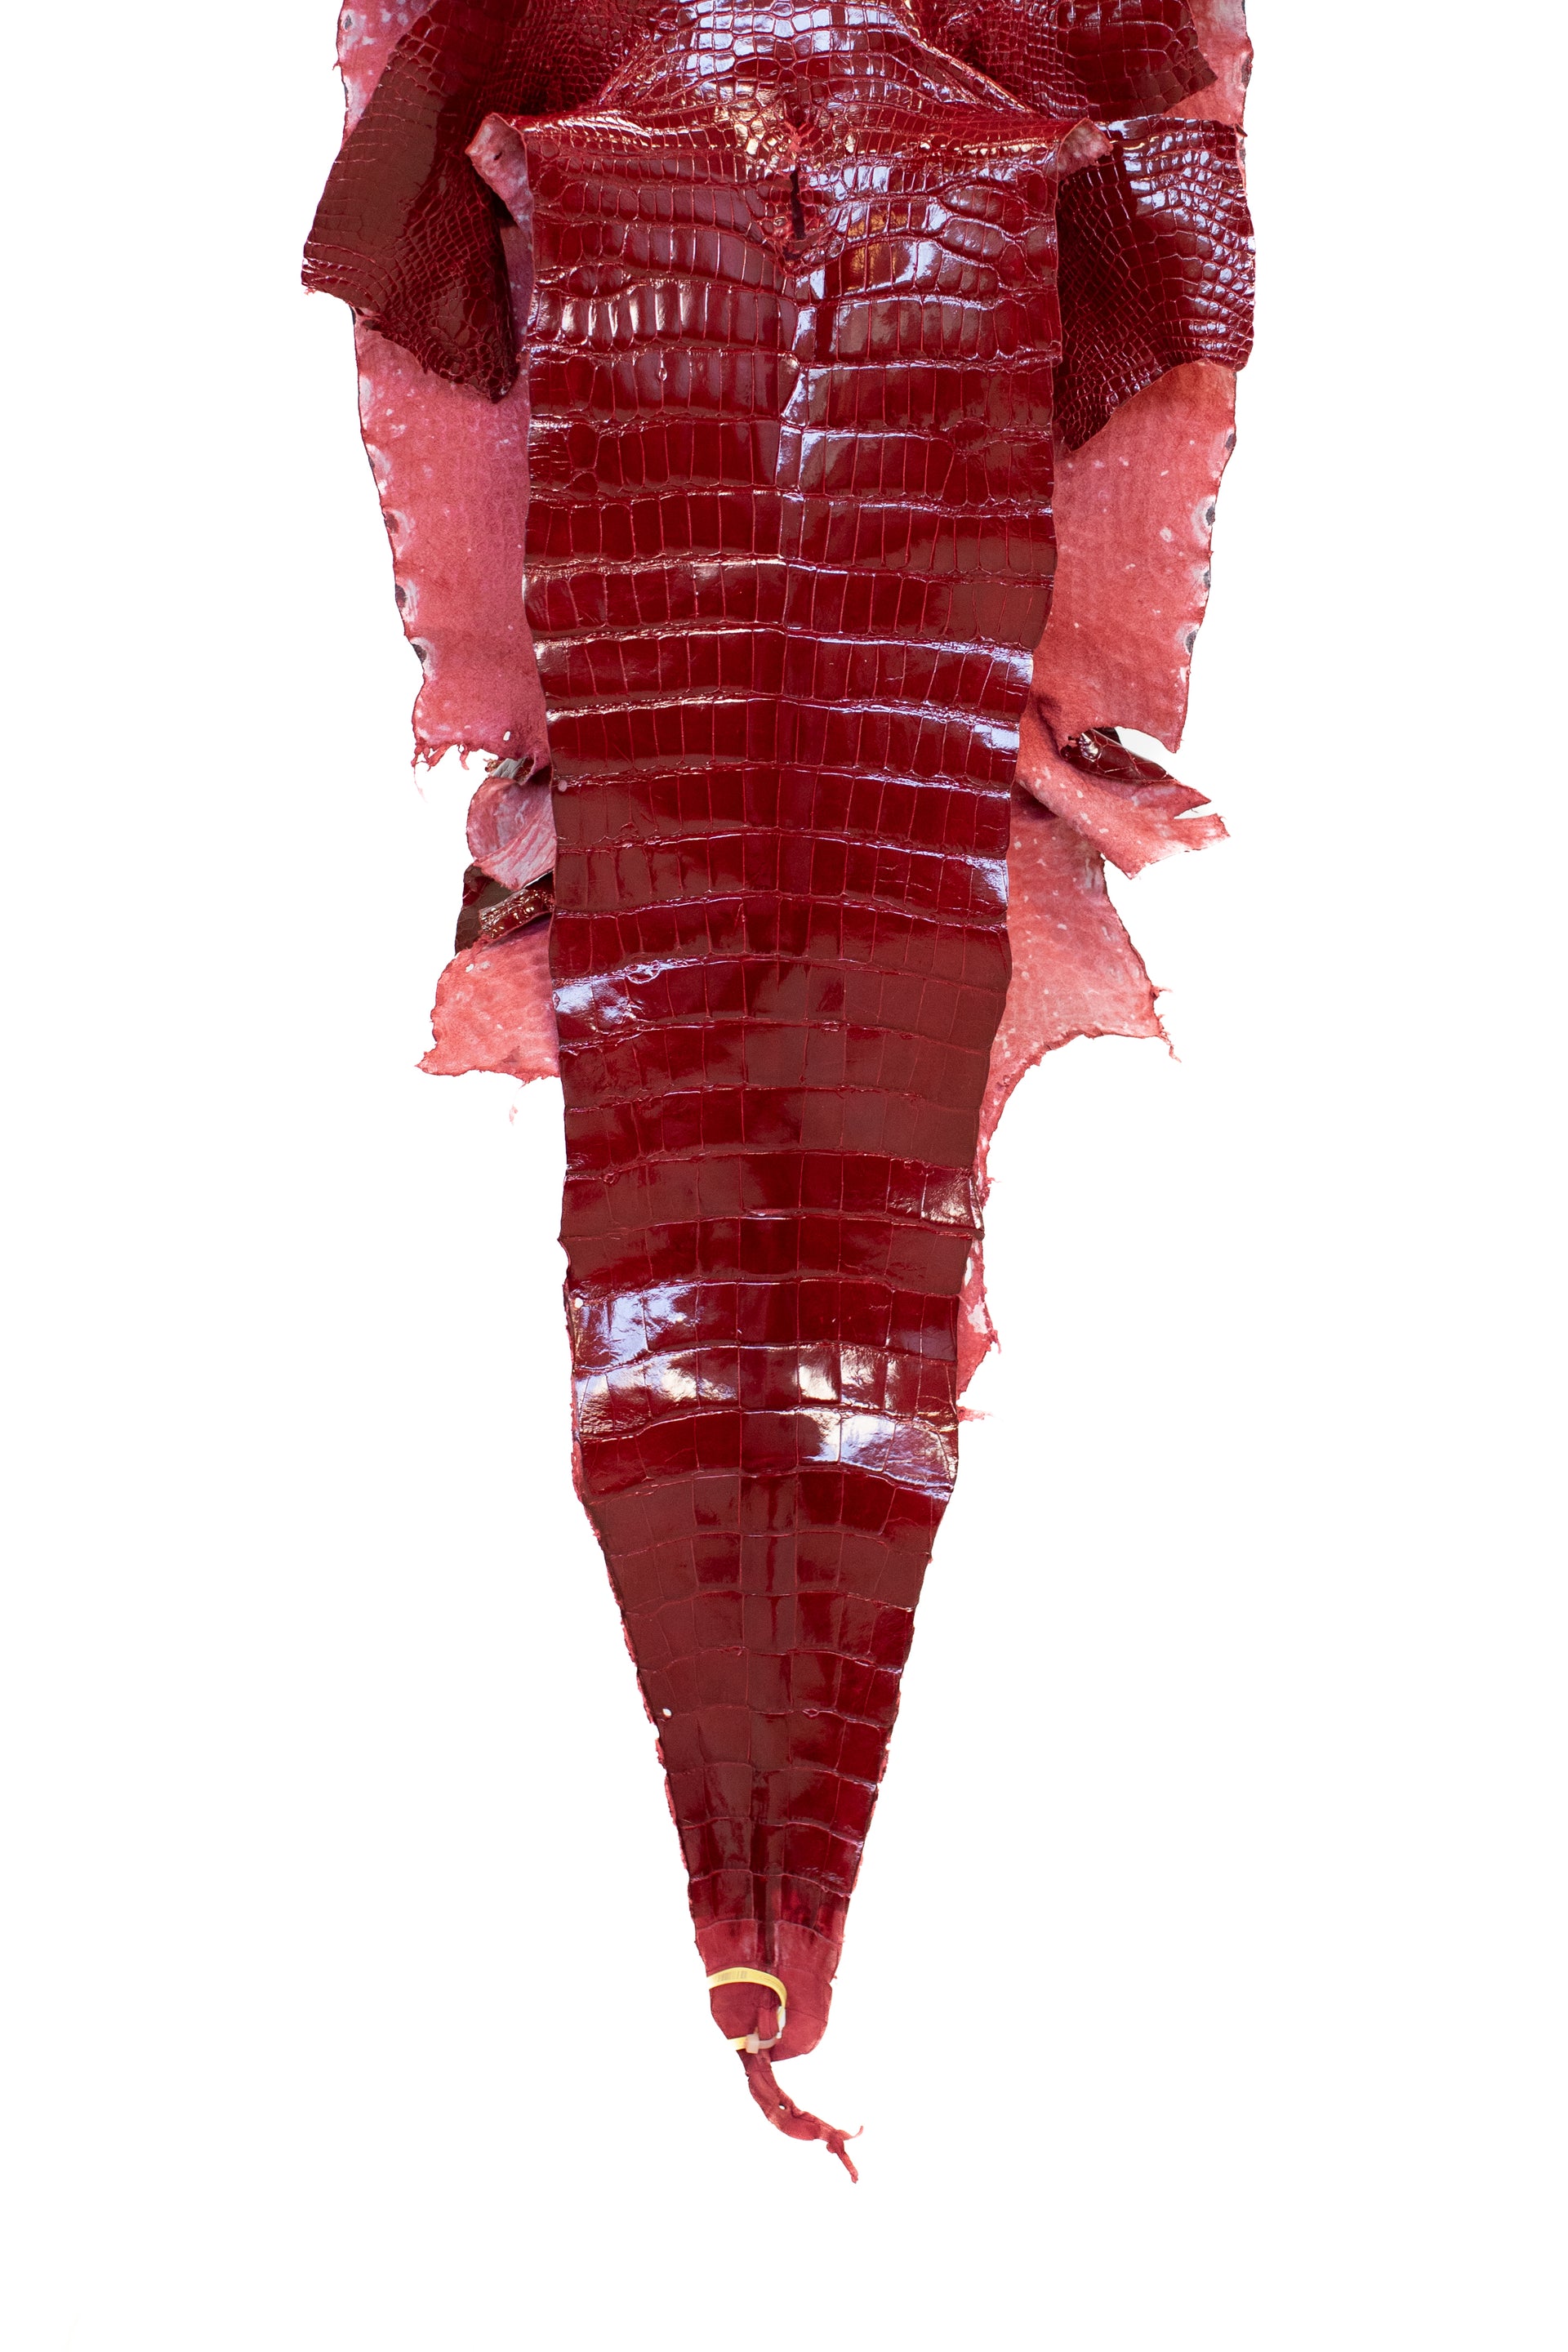 44 cm Grade 1/2 Red Glazed Wild American Alligator Leather - Tag: LA19-0037448